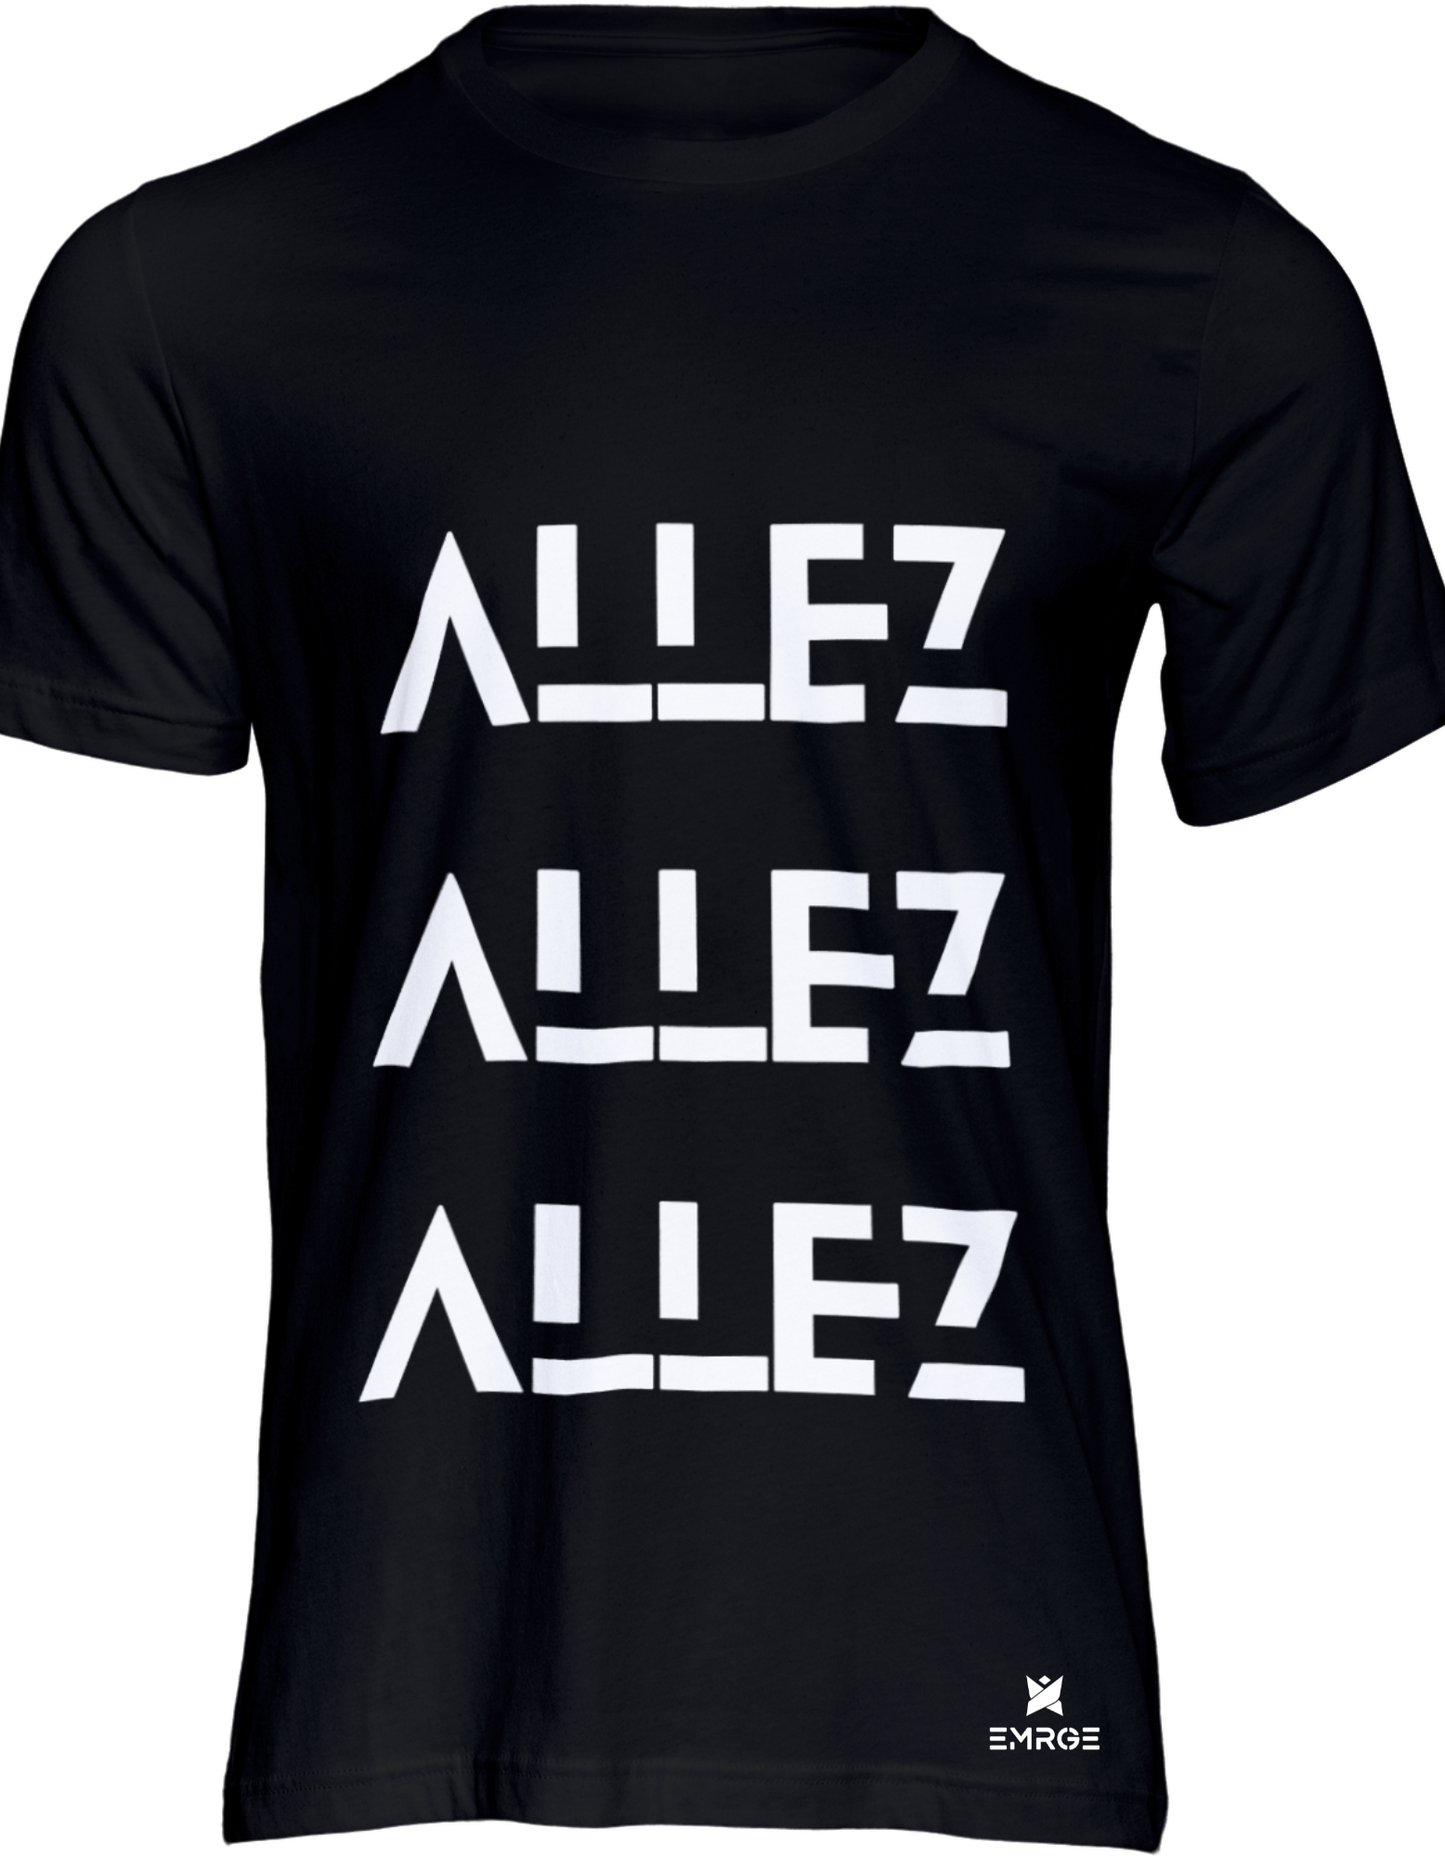 ALLEZ ALLEA [Liverpool] - 100% Cotton  Unisex Round Neck Tshirt